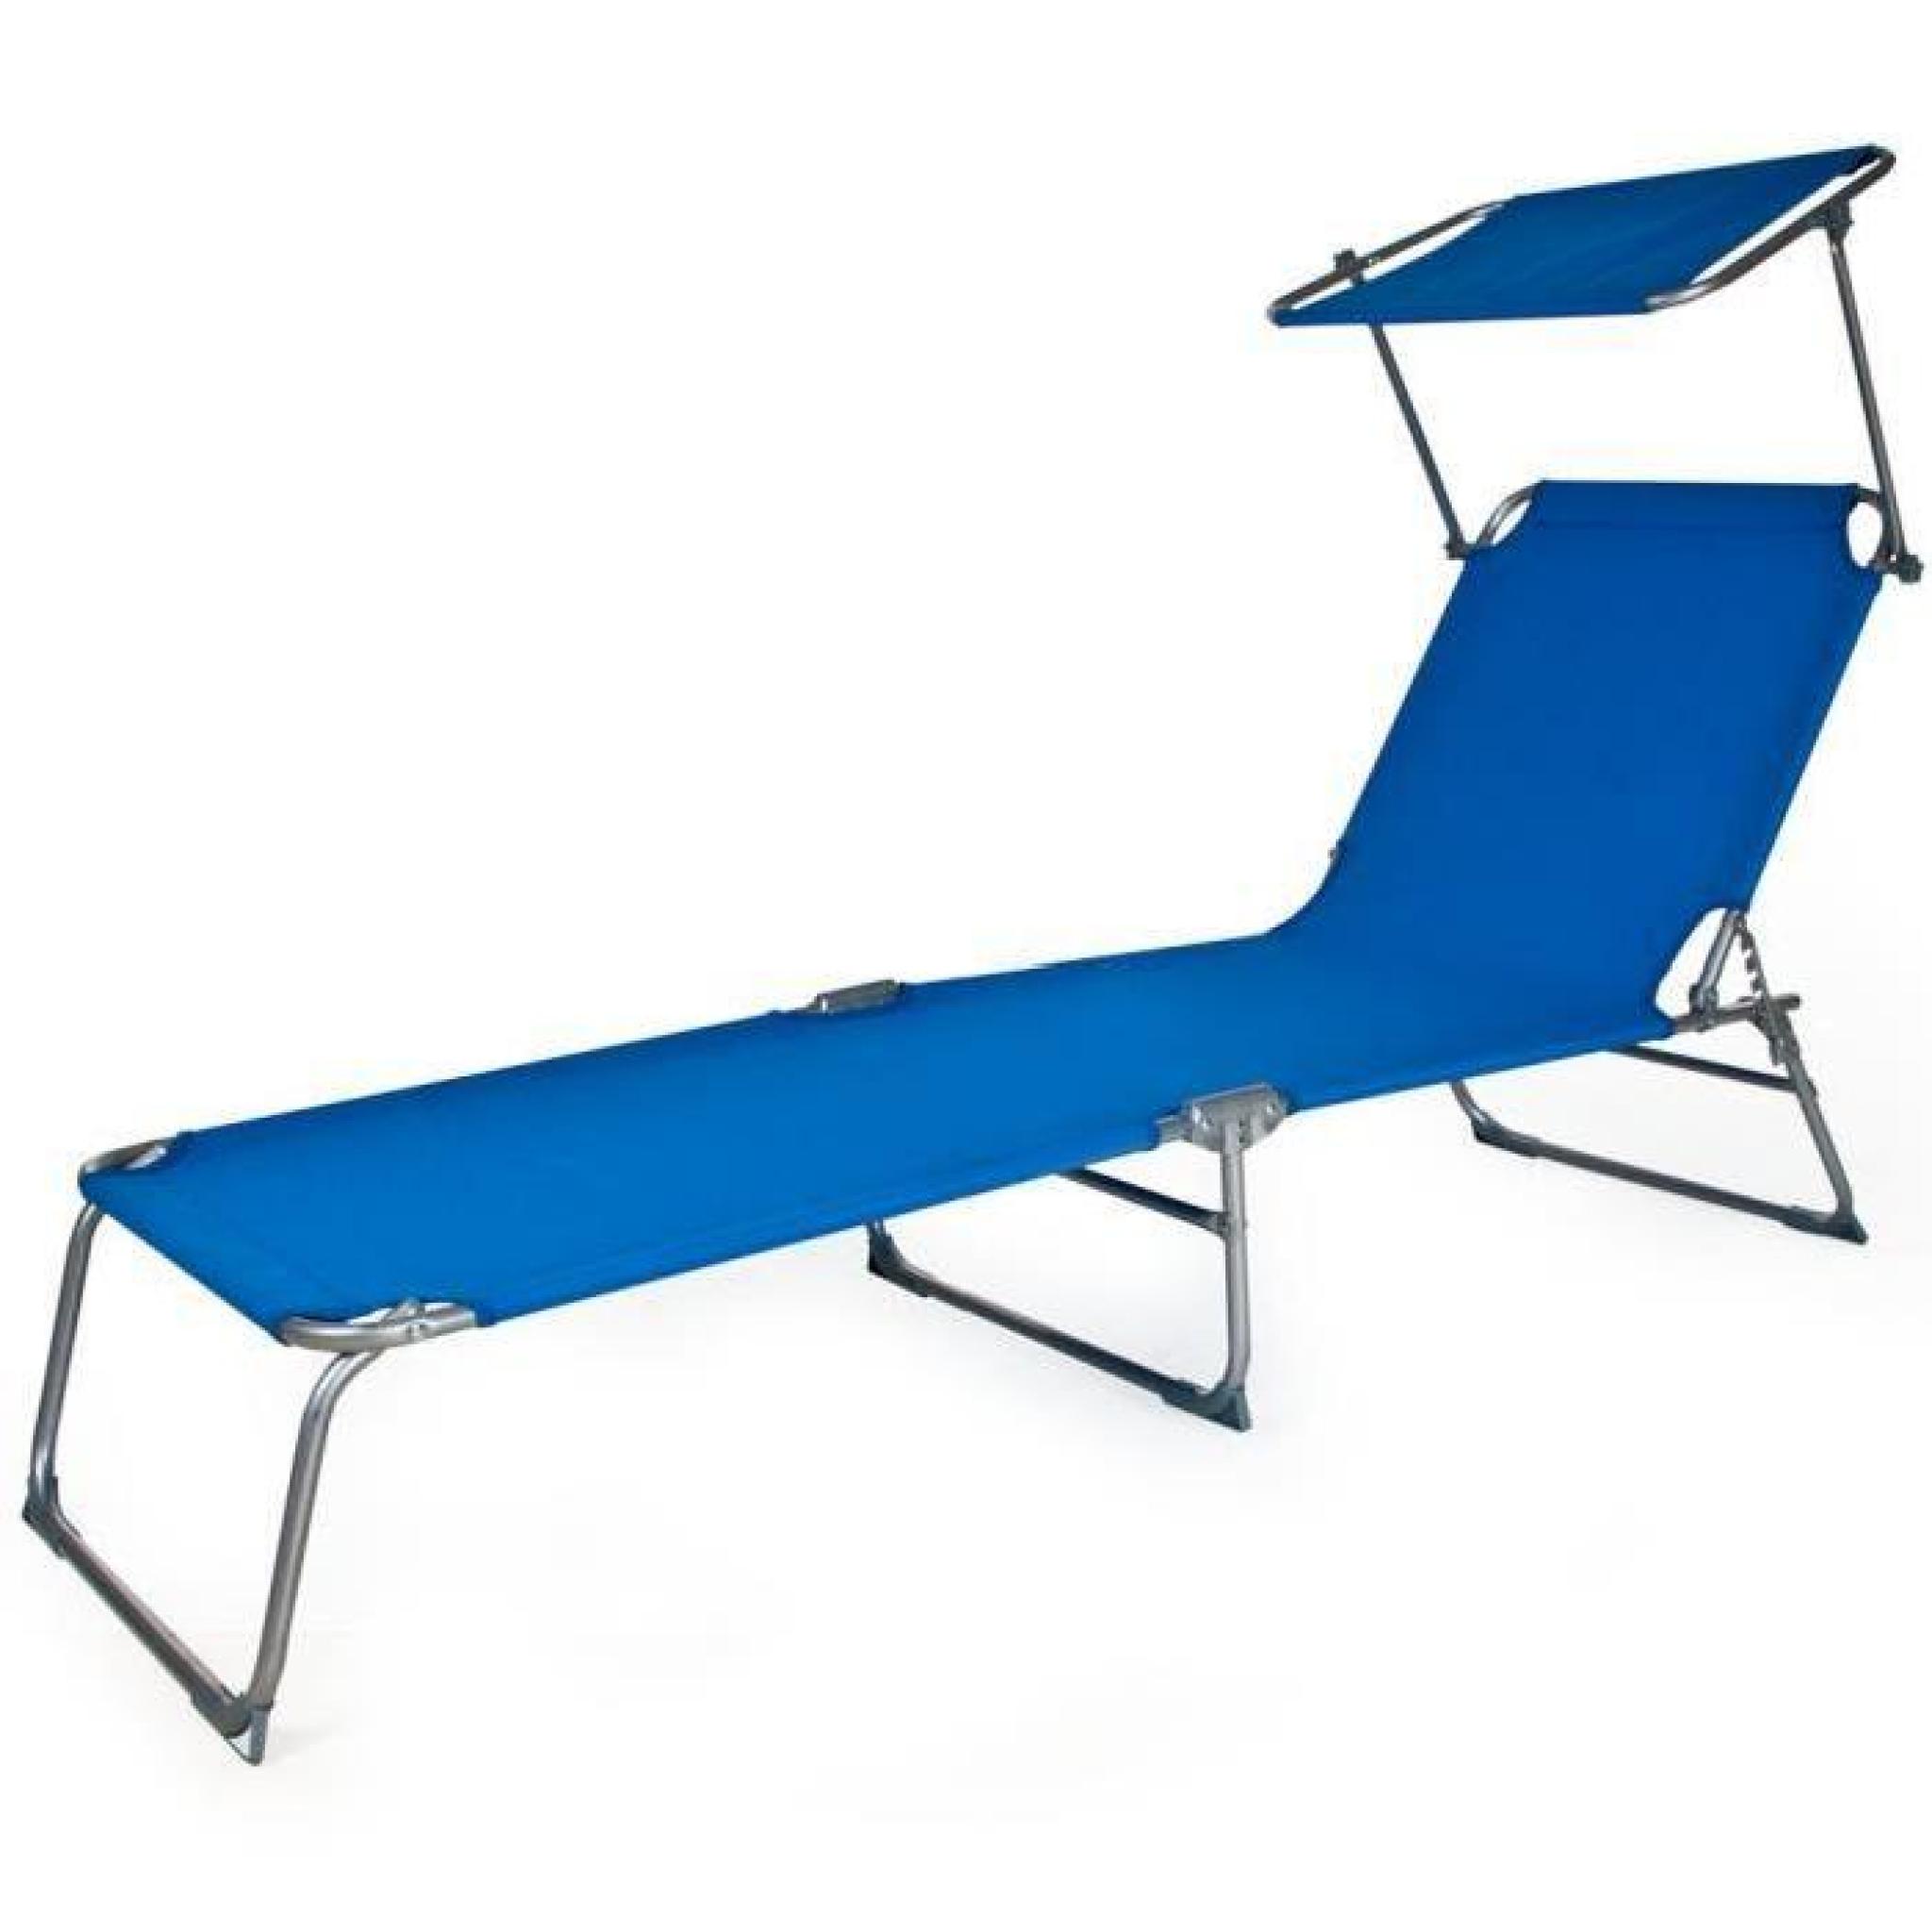 Chaise longue, Transat, Bain de soleil, Pare Soleil, Multi positions, Pliable 190 cm Bleu TECTAKE X 2 pas cher